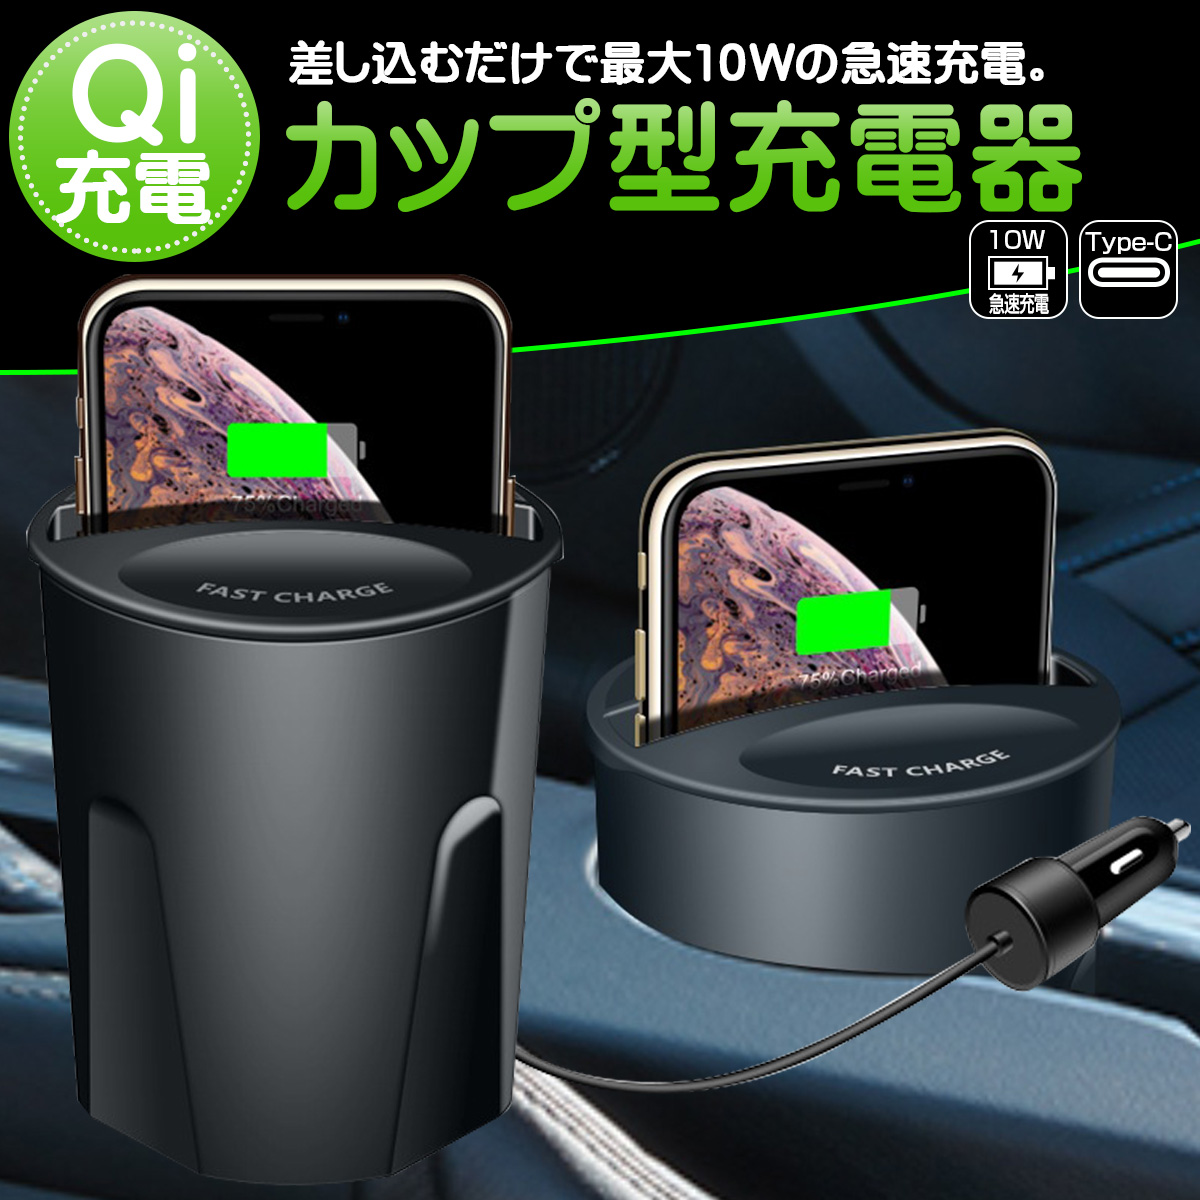 Qiワイヤレス充電カップ 10W急速充電 ドリンクホルダー USB充電ポート×2 スマホ 携帯 Y-108